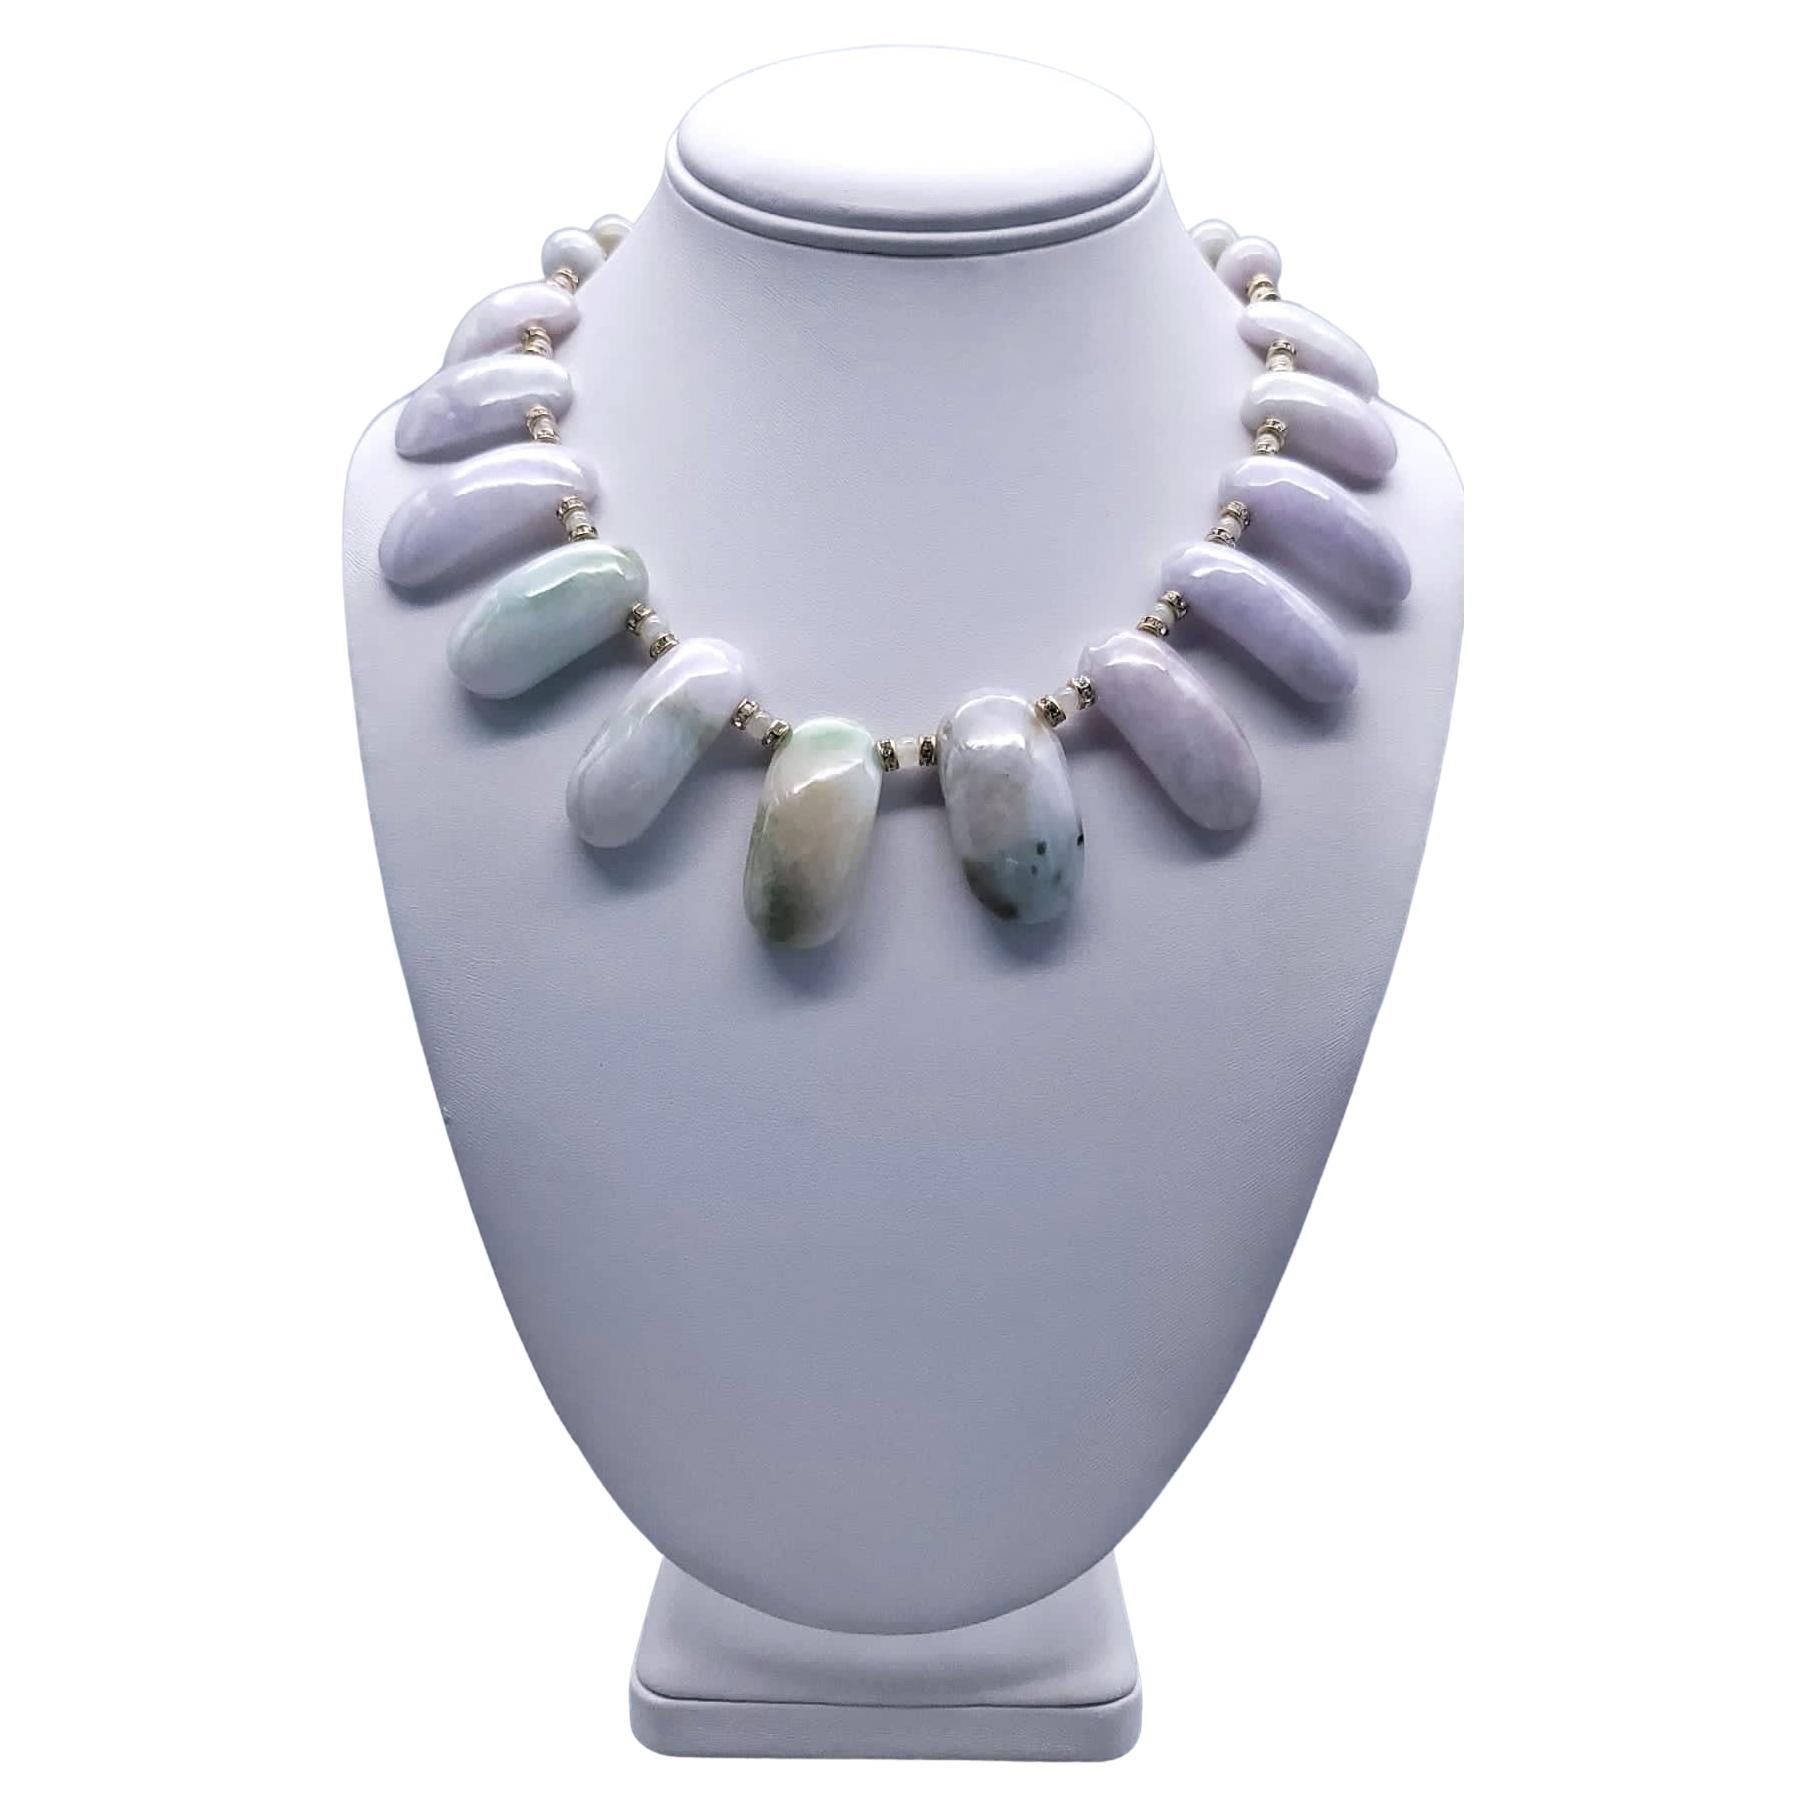 A.Jeschel Lavender Burma Jade necklace. For Sale